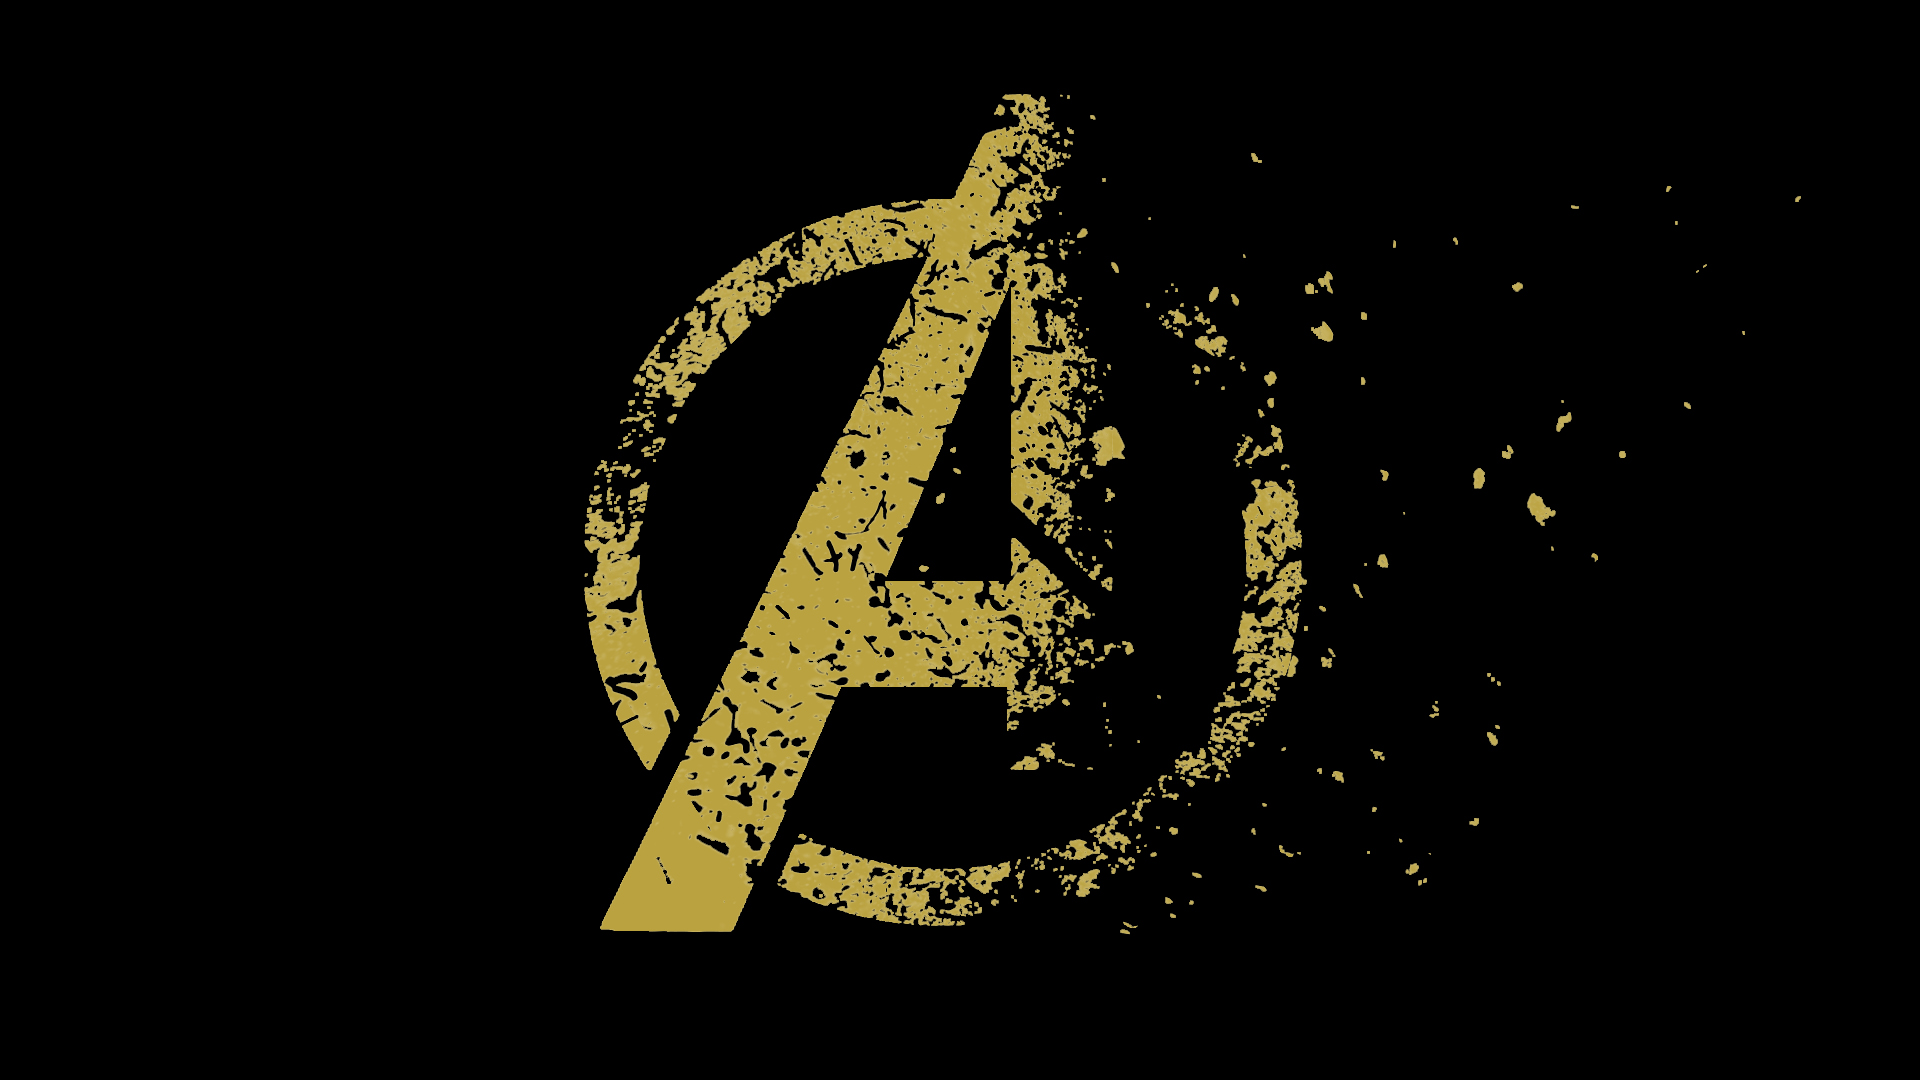 Avengers Endgame Movie Logo Disintegrating By Nicksayan